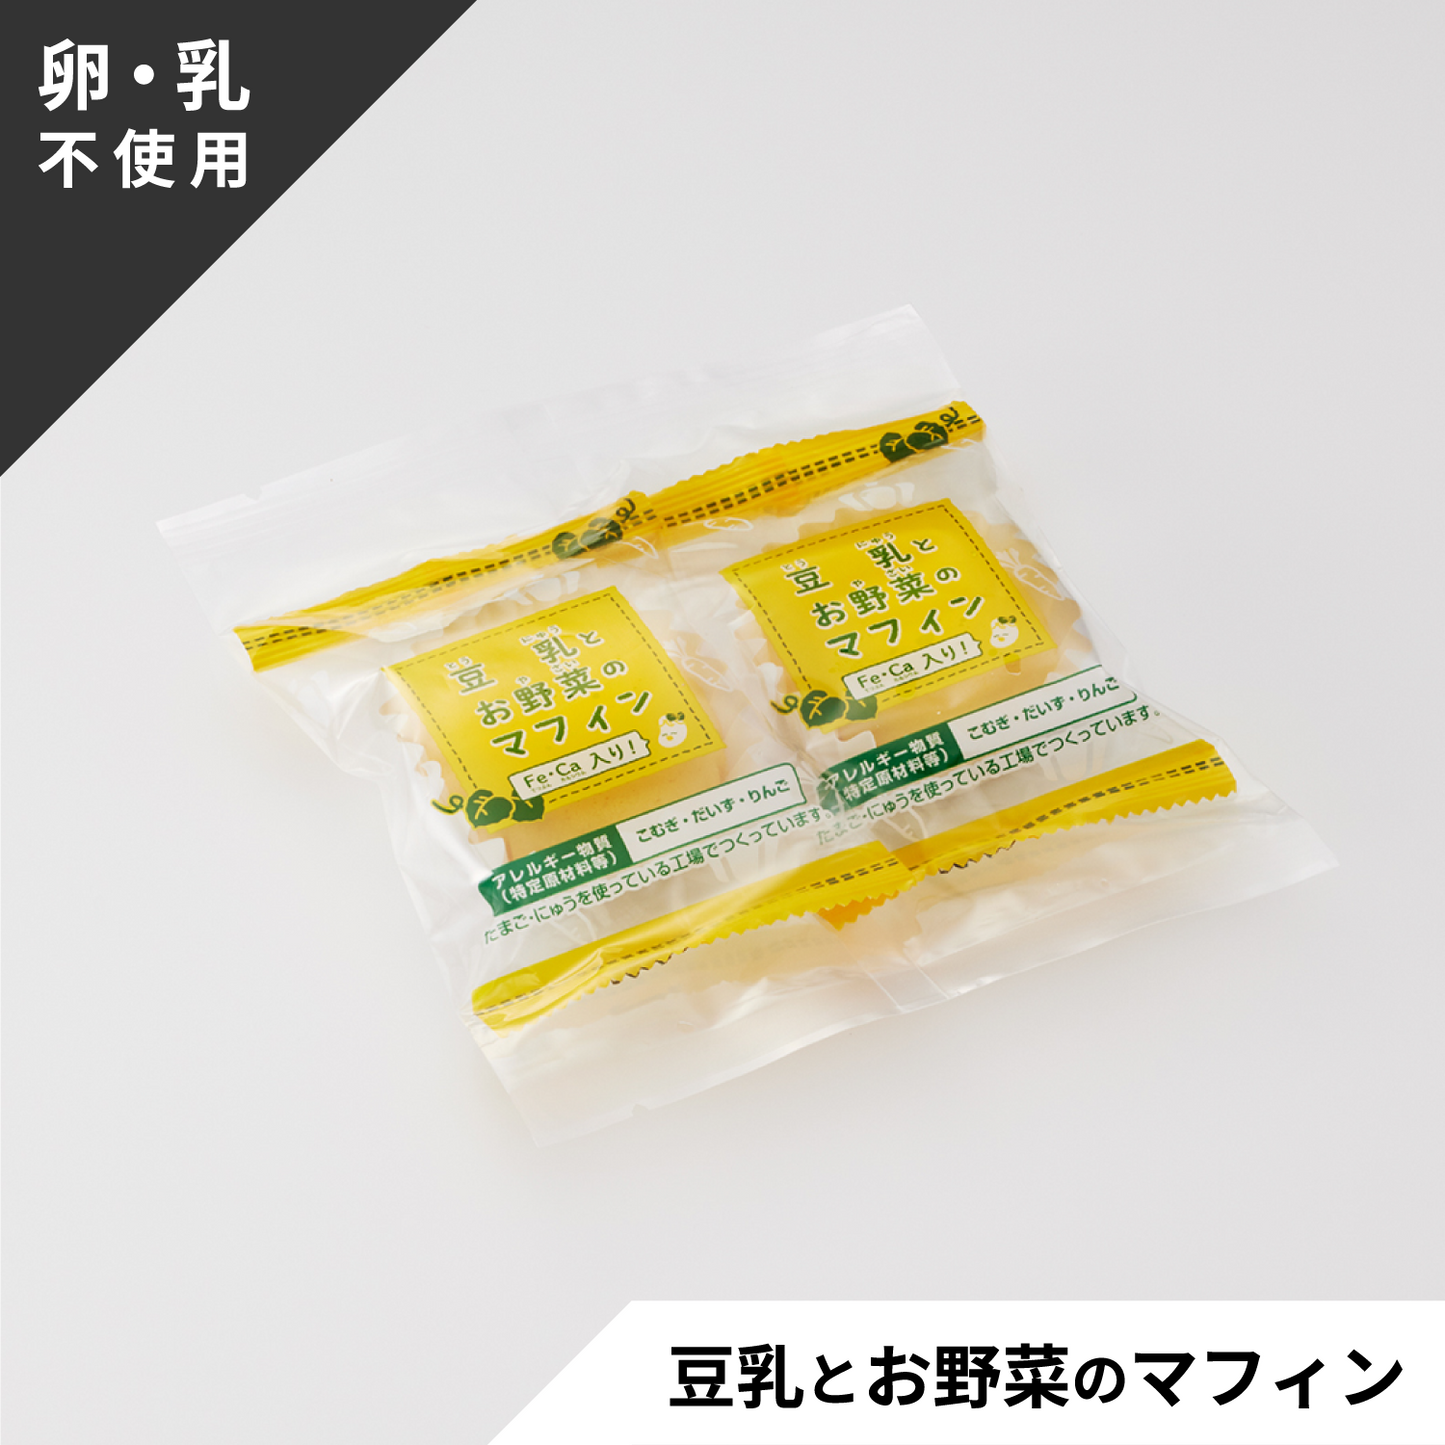 【乳不使用】プチデザート3種 食べ比べセット